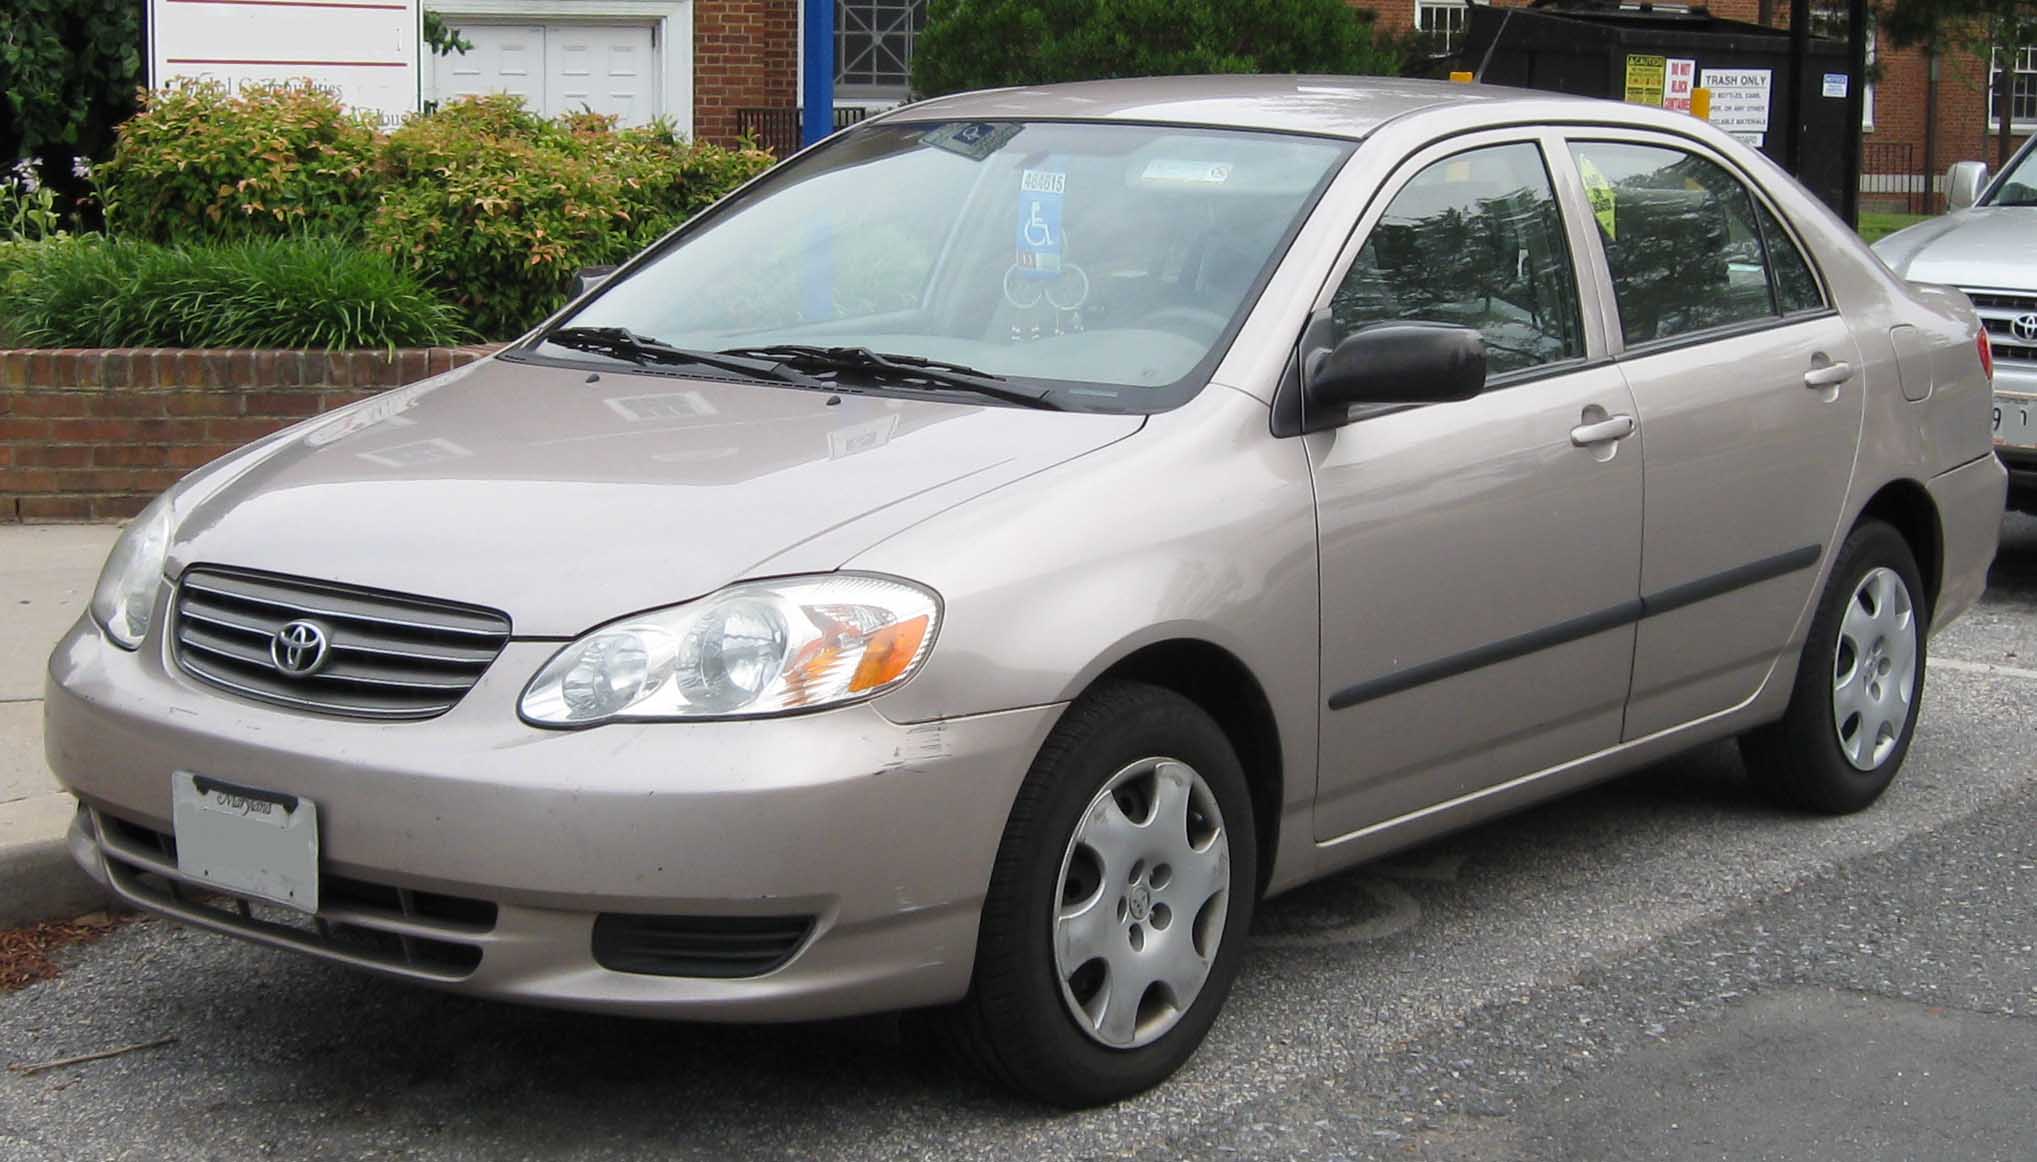 File:2003-2004 Toyota Corolla CE.jpg